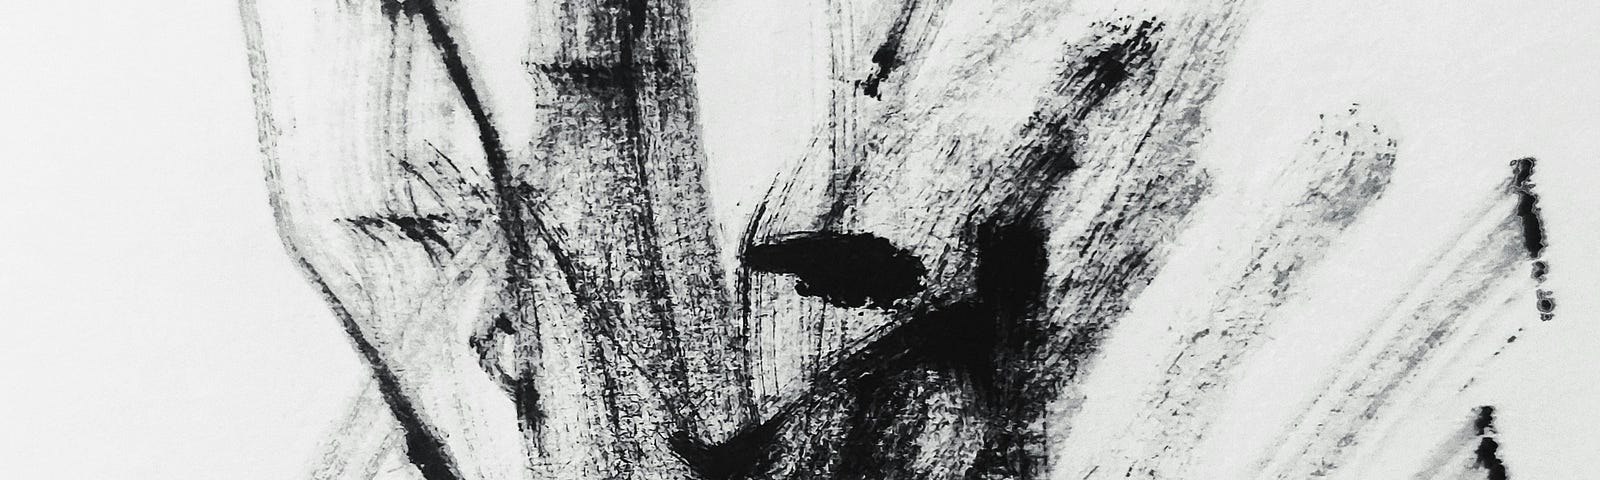 black paint streaks on white, dry-brush technique, abstract art